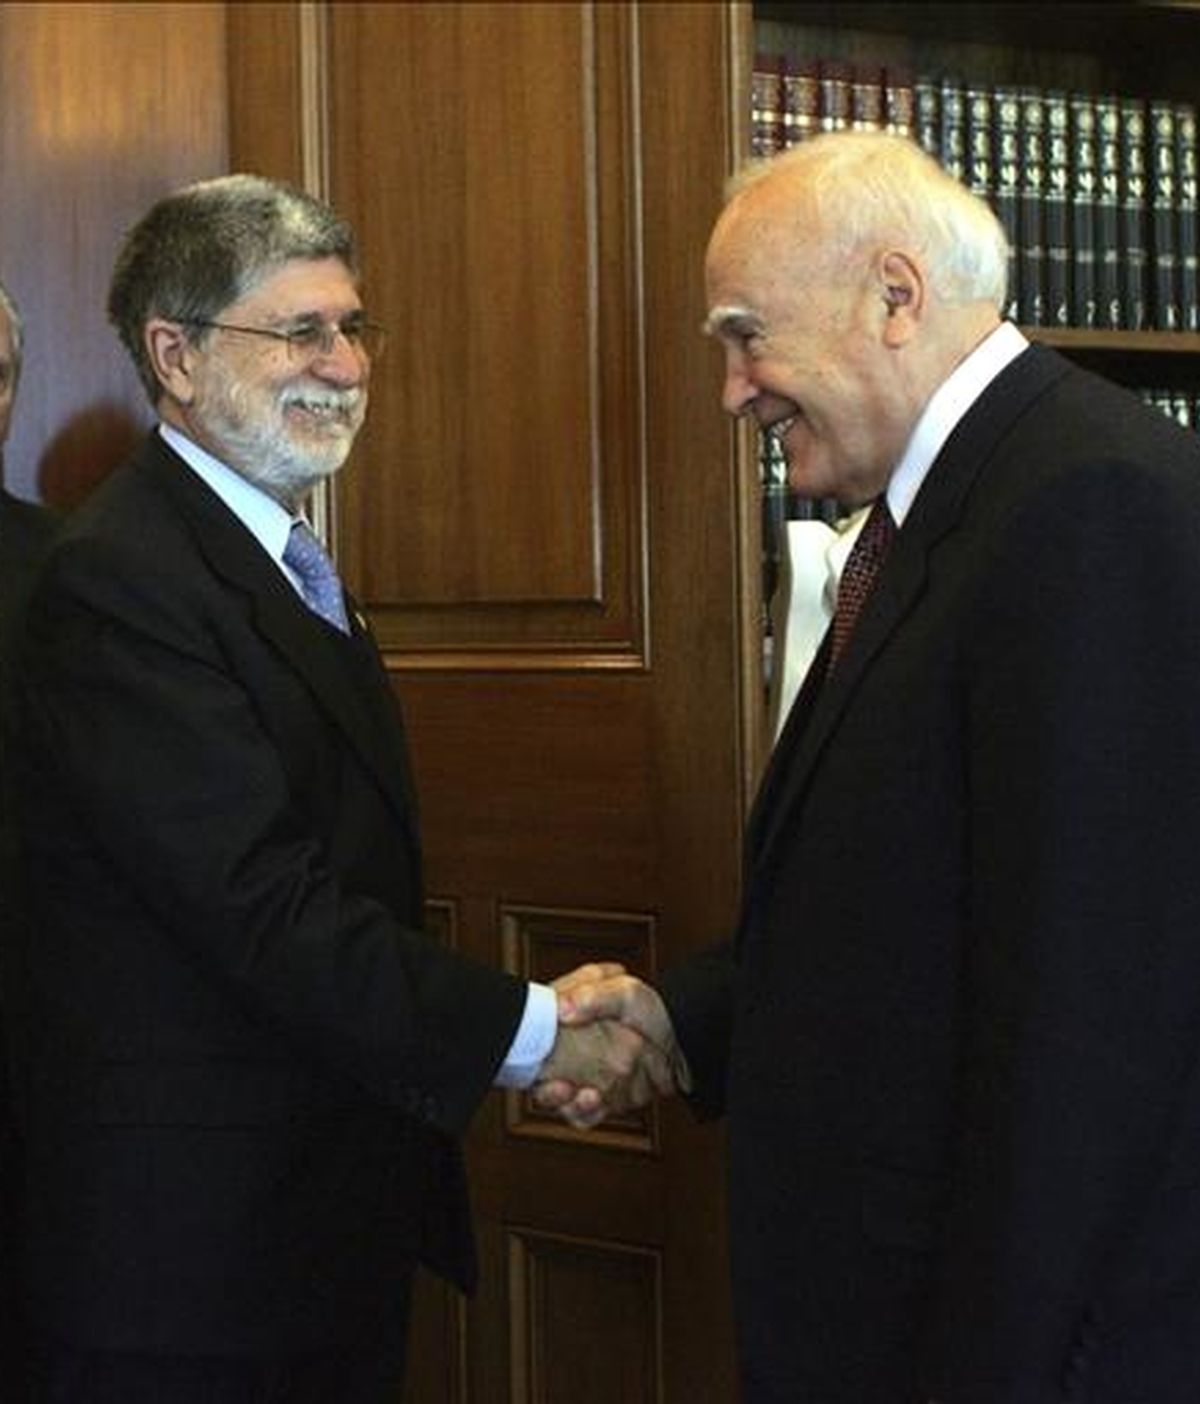 El presidente griego, Karolos Papoulias (dcha), estrecha la mano del ministro de Asuntos Exteriores de Brasil, Celso Amorim (izq), durante su encuentro en Atenas, Grecia, el pasado viernes, 3 de abril. EFE